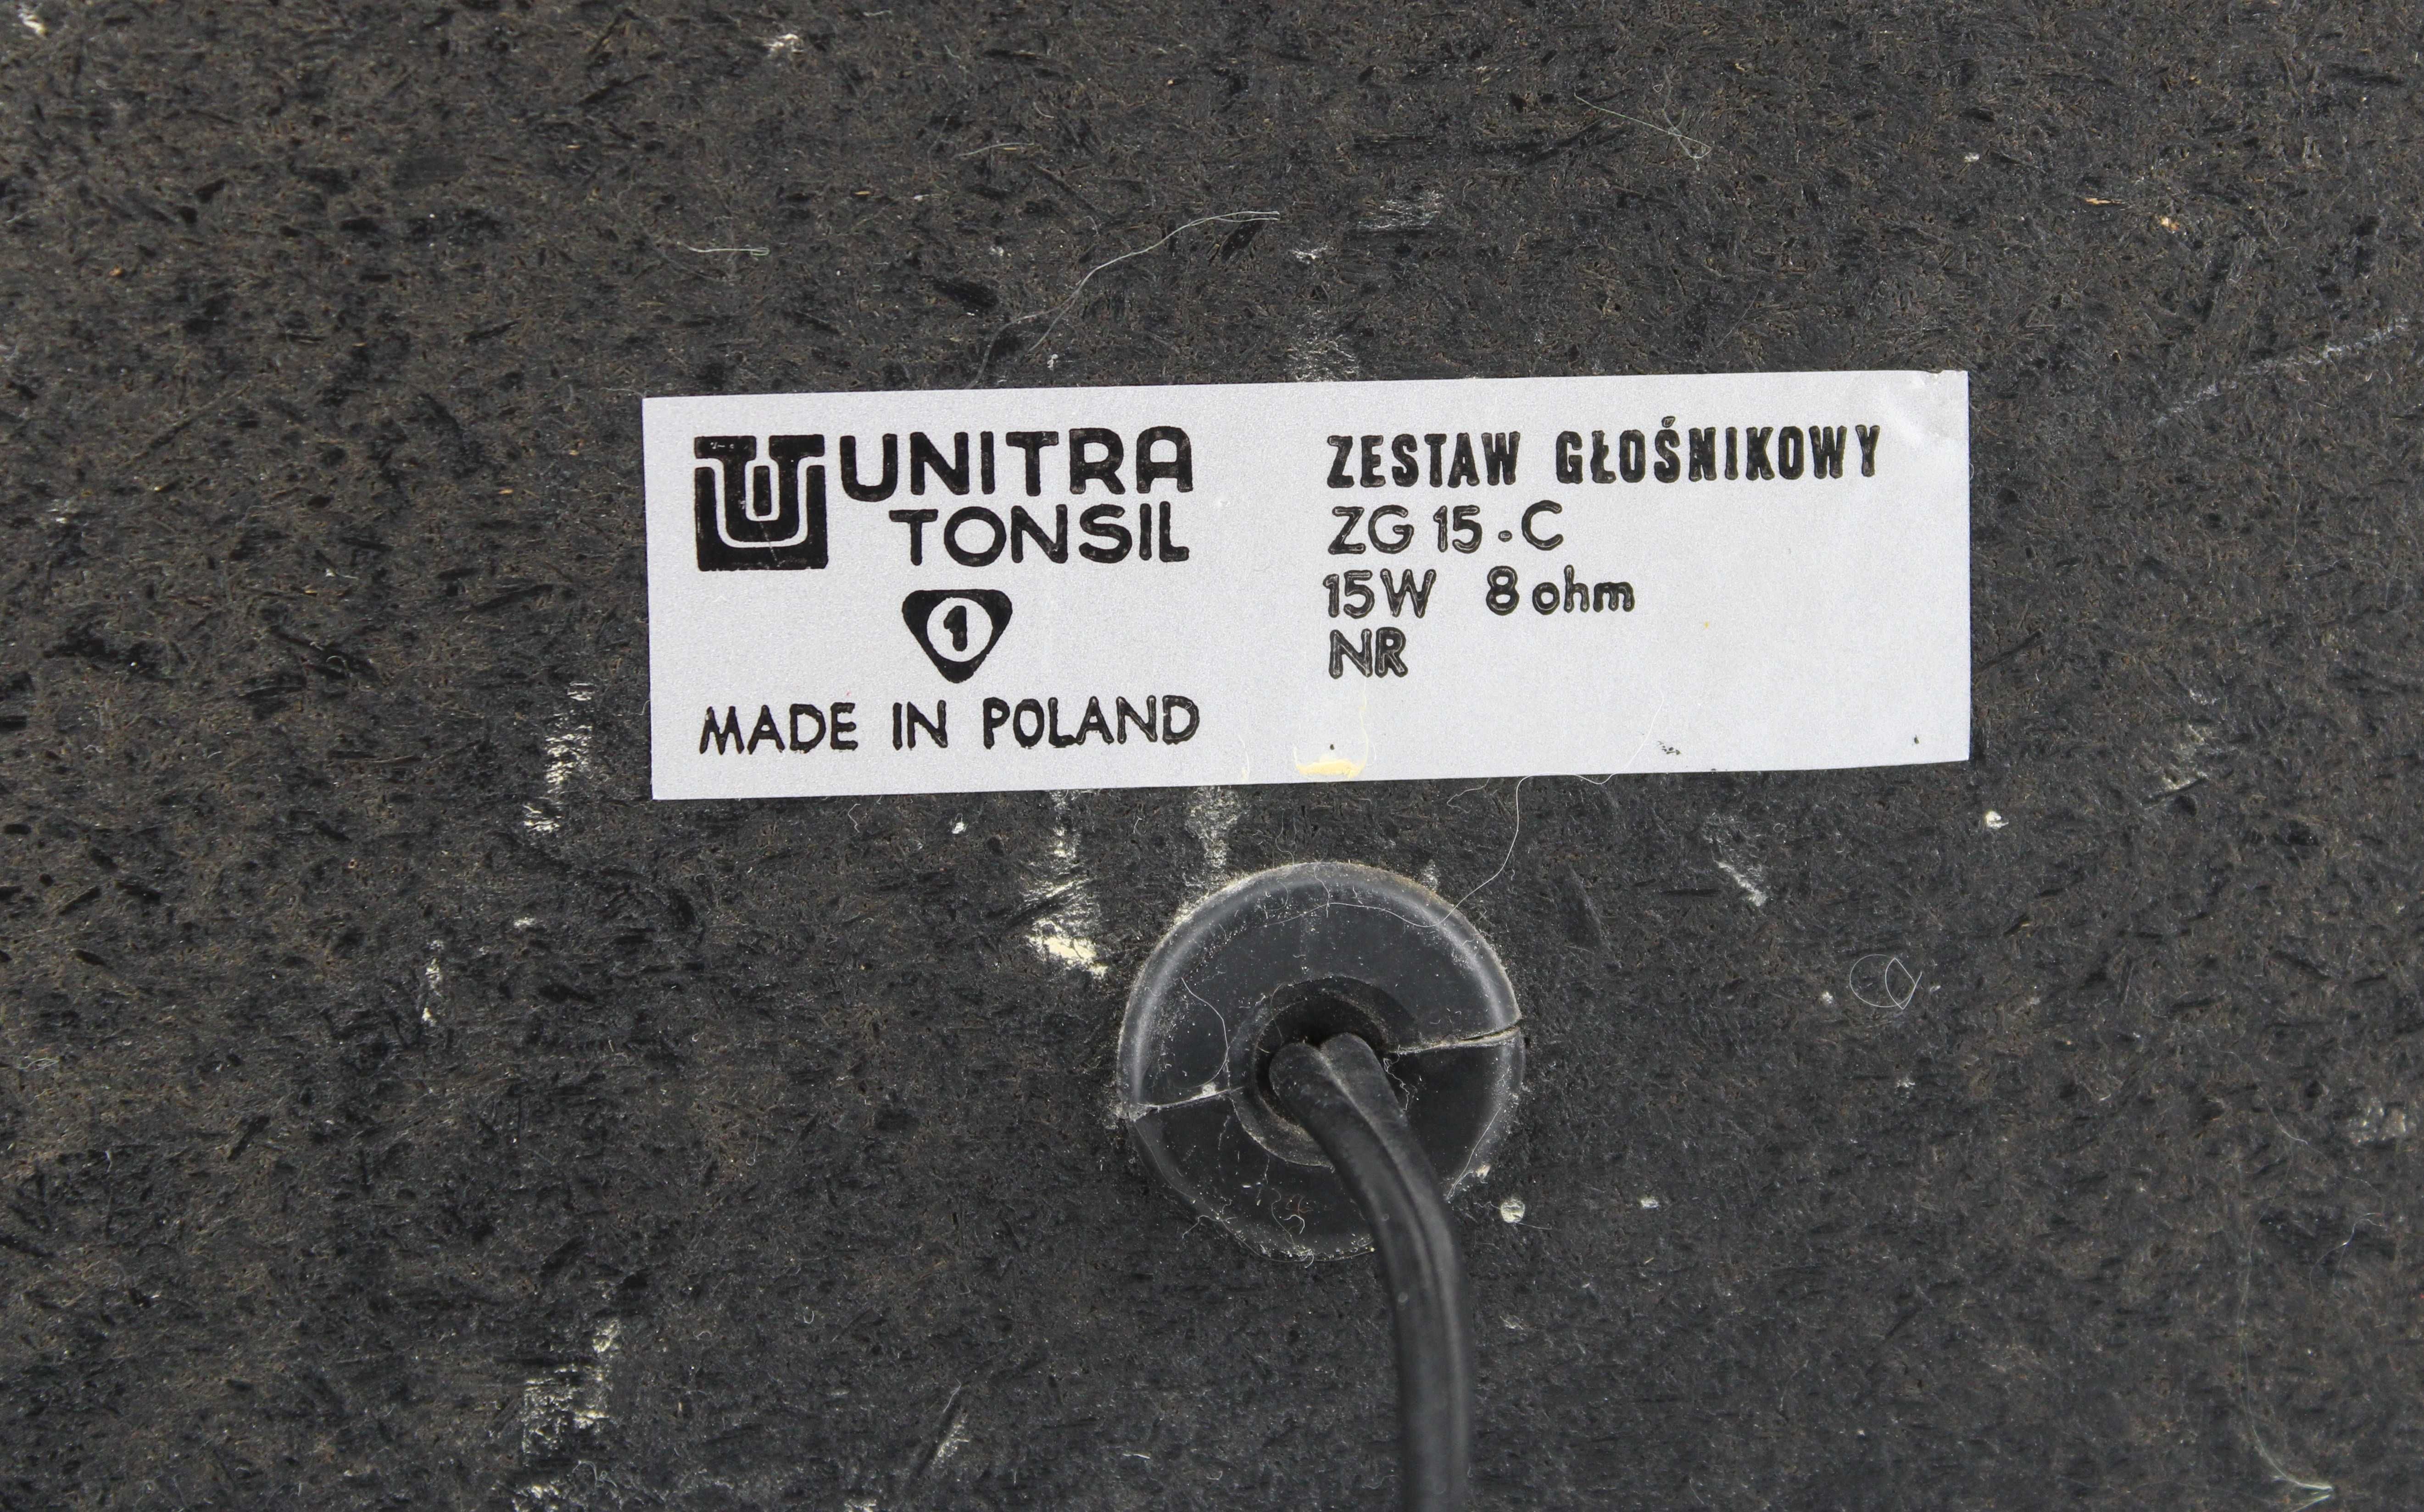 Zestaw głośnikowy Tonsil Unitra  ZG-15-C, lata 80